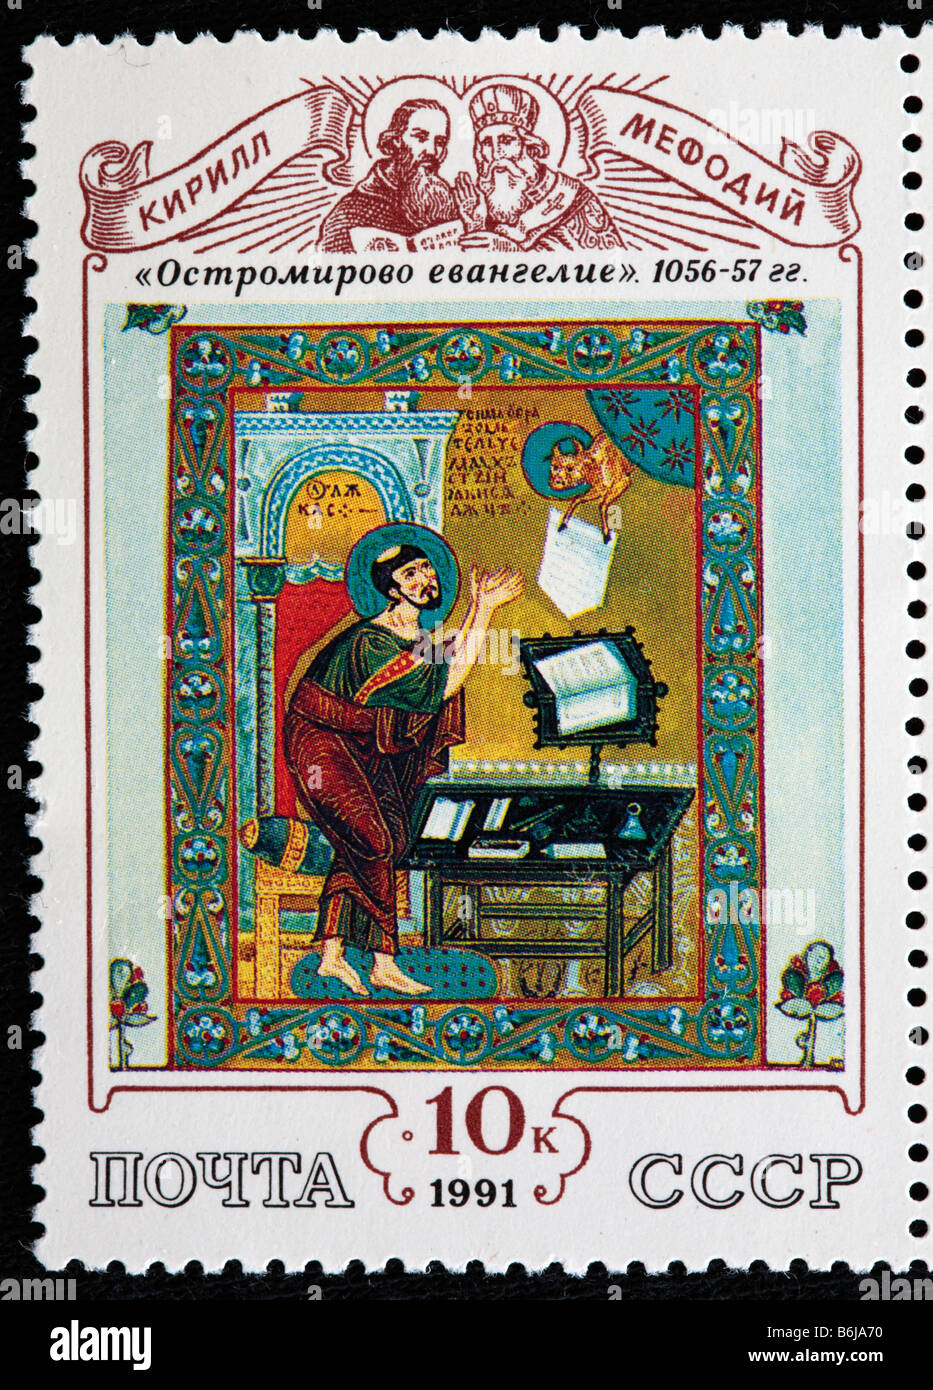 Miniatura dal Vangelo di Ostromir, la più antica datata est libro slava (1056-1057), francobollo, URSS, 1991 Foto Stock